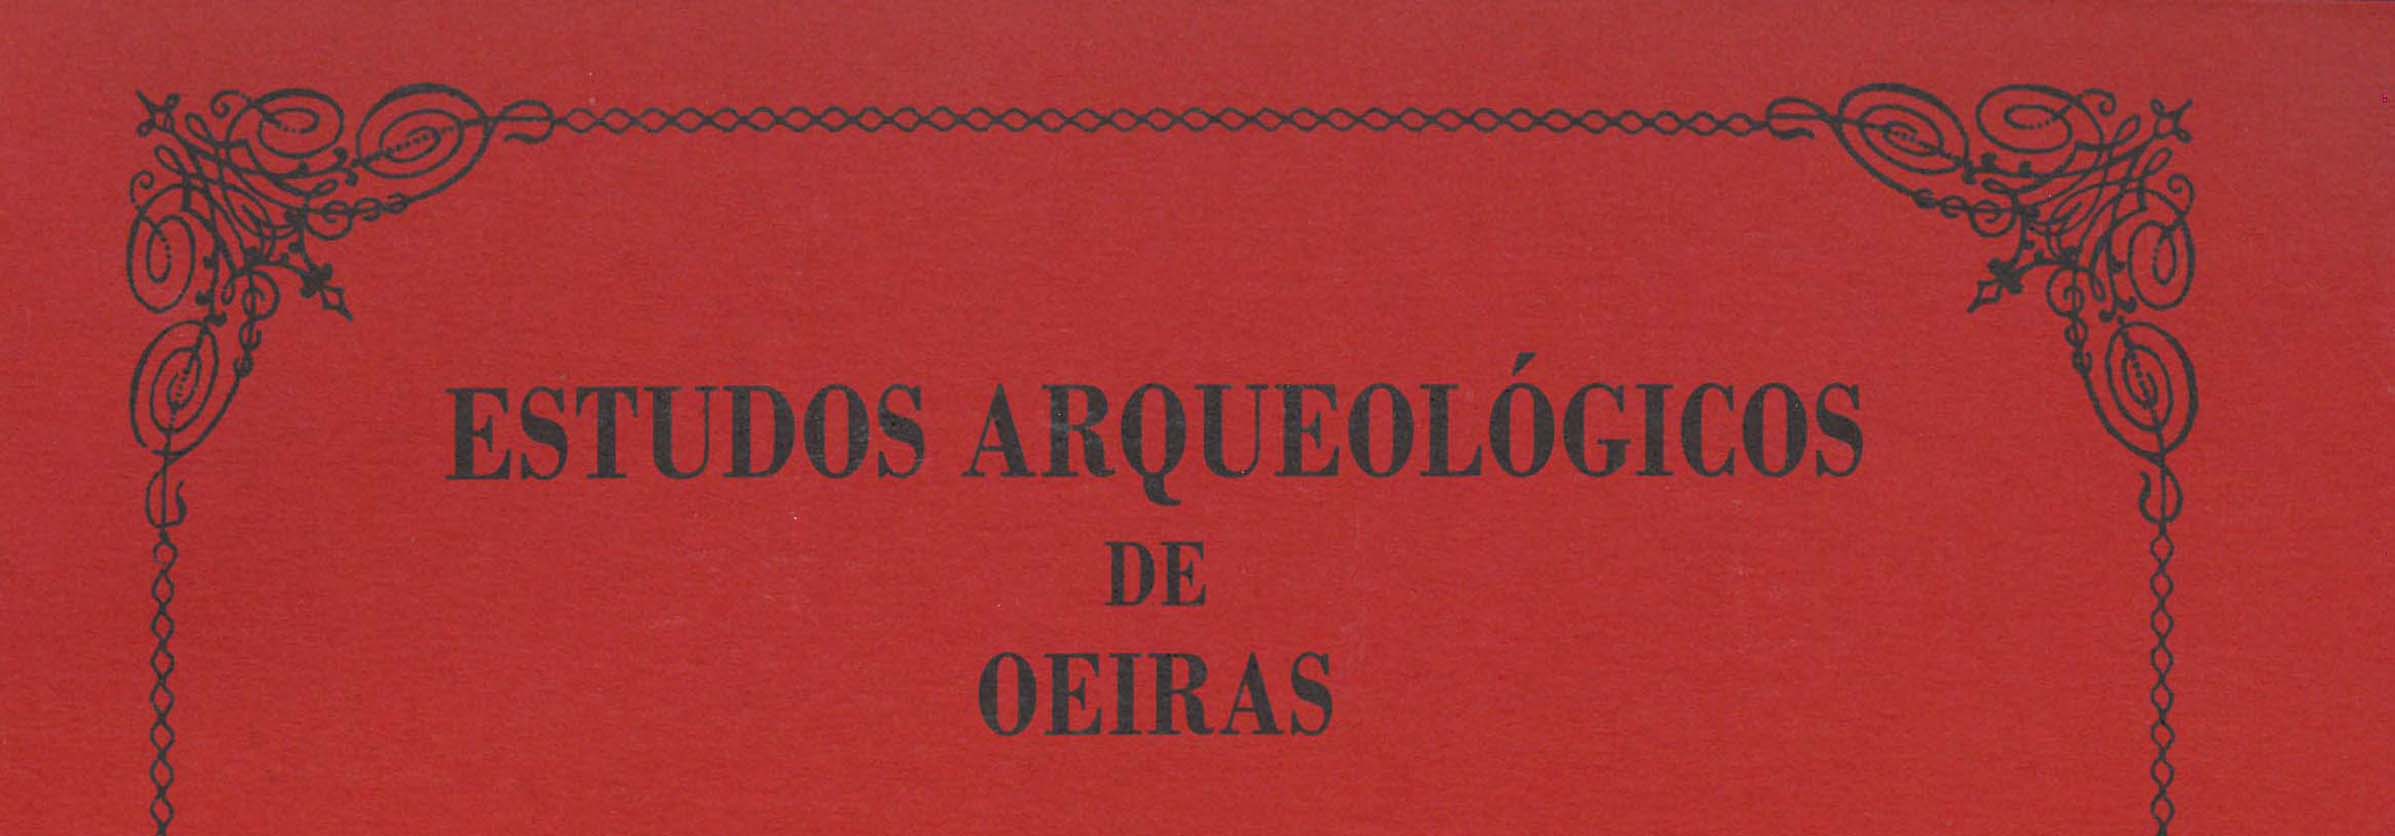 capa de Estudos Arqueológicos de Oeiras, 30